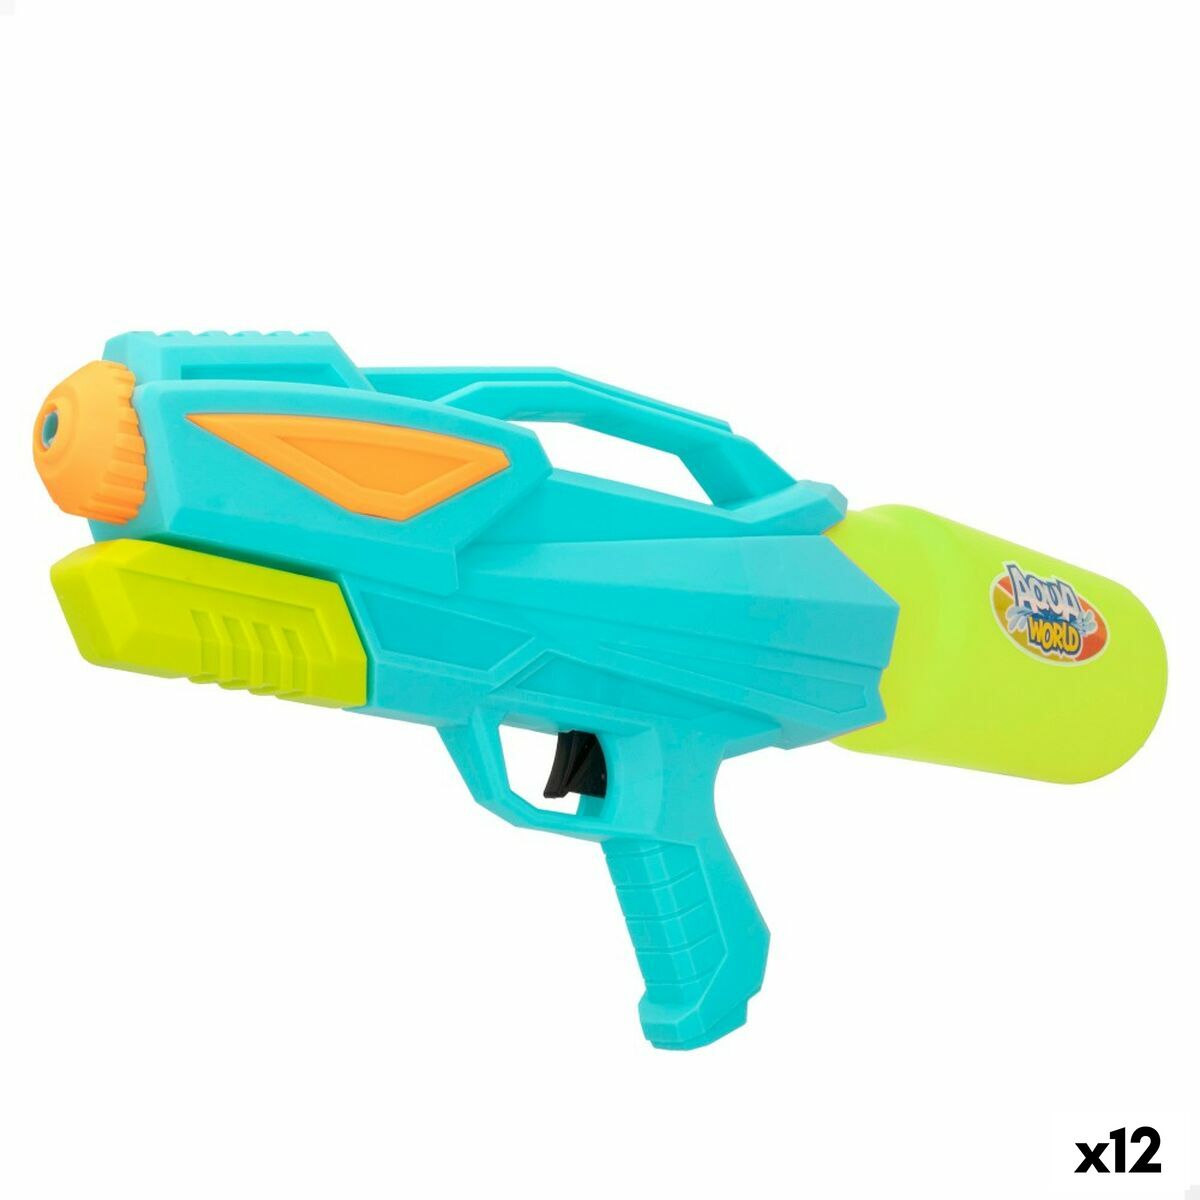 Pistolet à Eau Colorbaby Aqua World 38 x 17,5 x 7,5 cm (12 Unités)